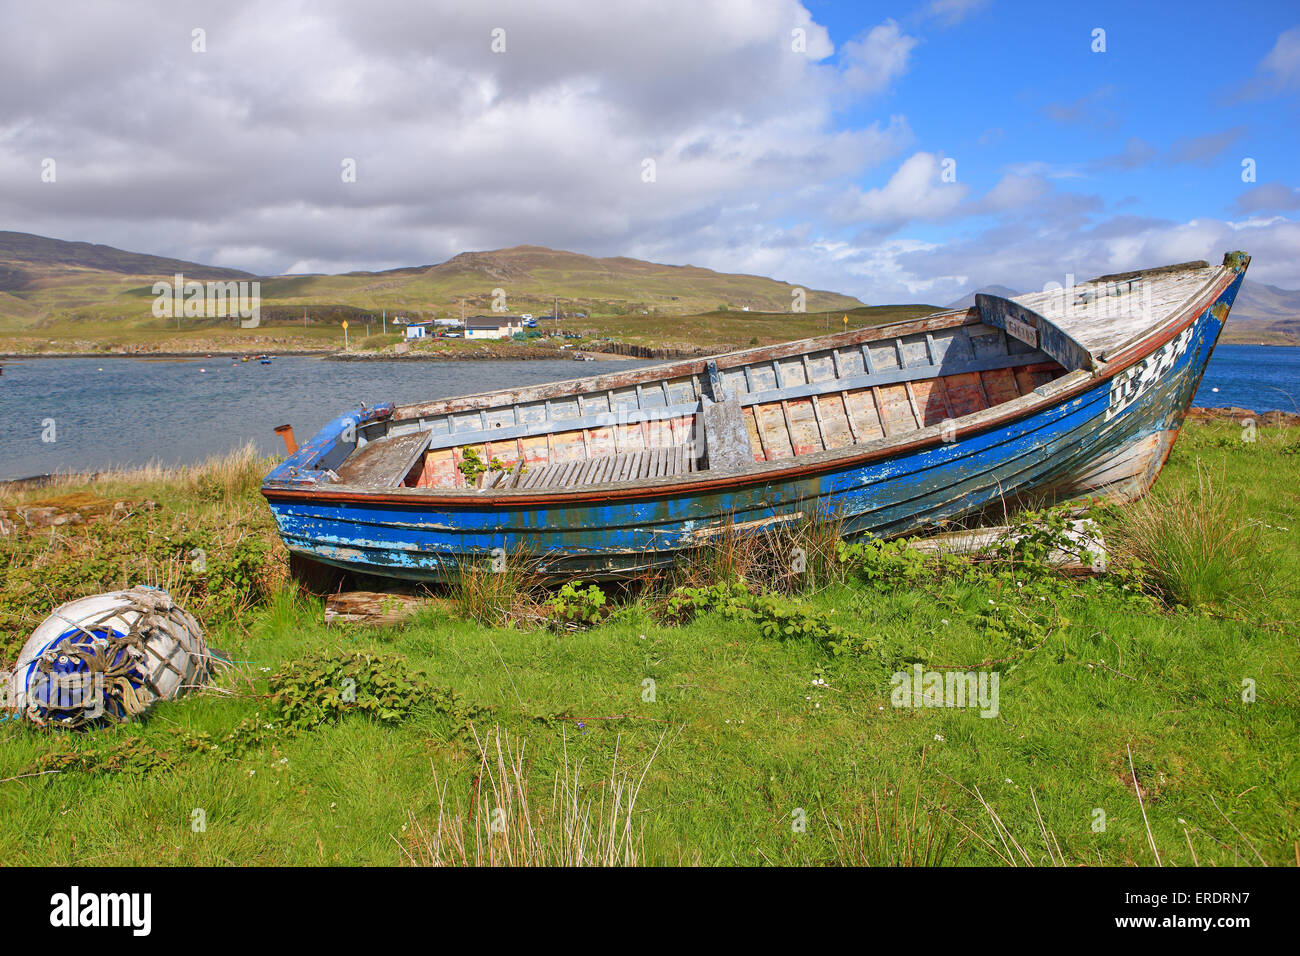 Vecchia barca sull'Isola di Ulva con il suono dell' Ulva e l'Isle of Mull in background. Foto Stock